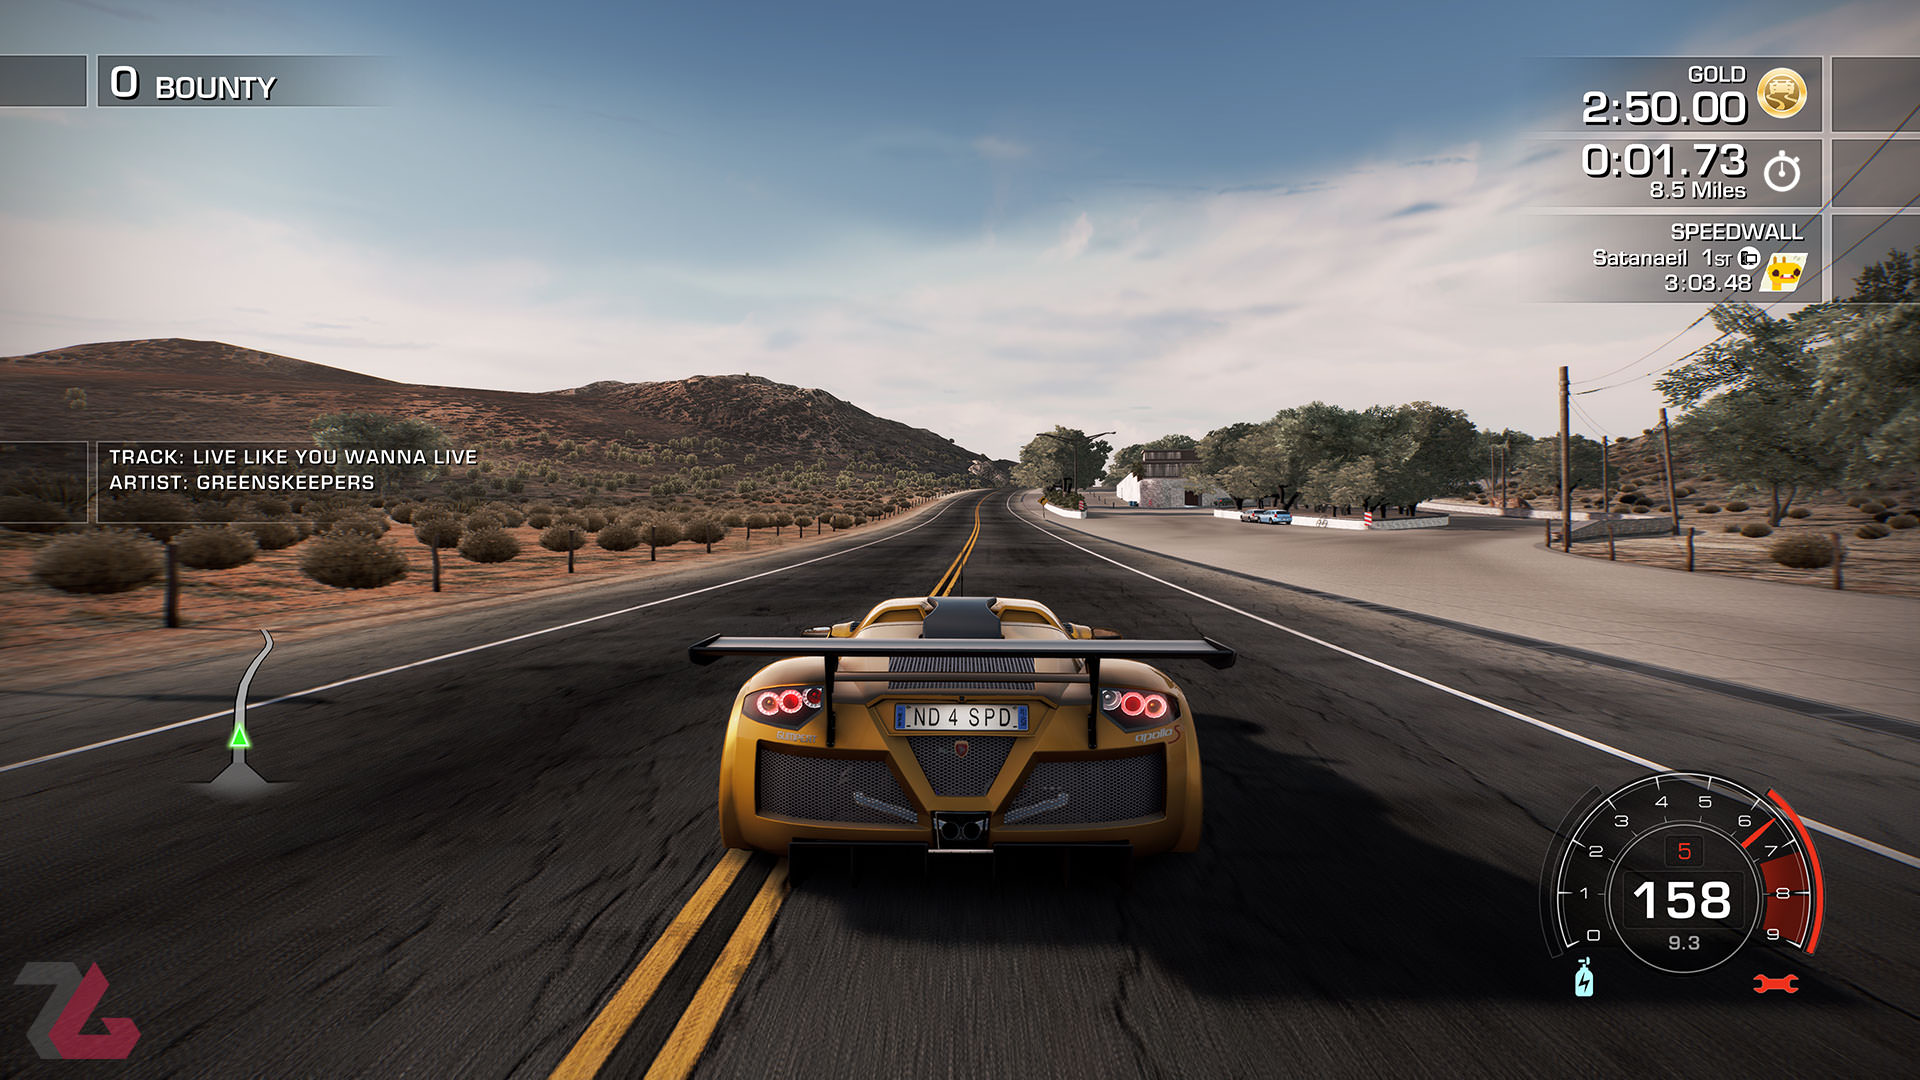 مسابقه در محیط کویری در Need for Speed Hot Pursuit Remastered